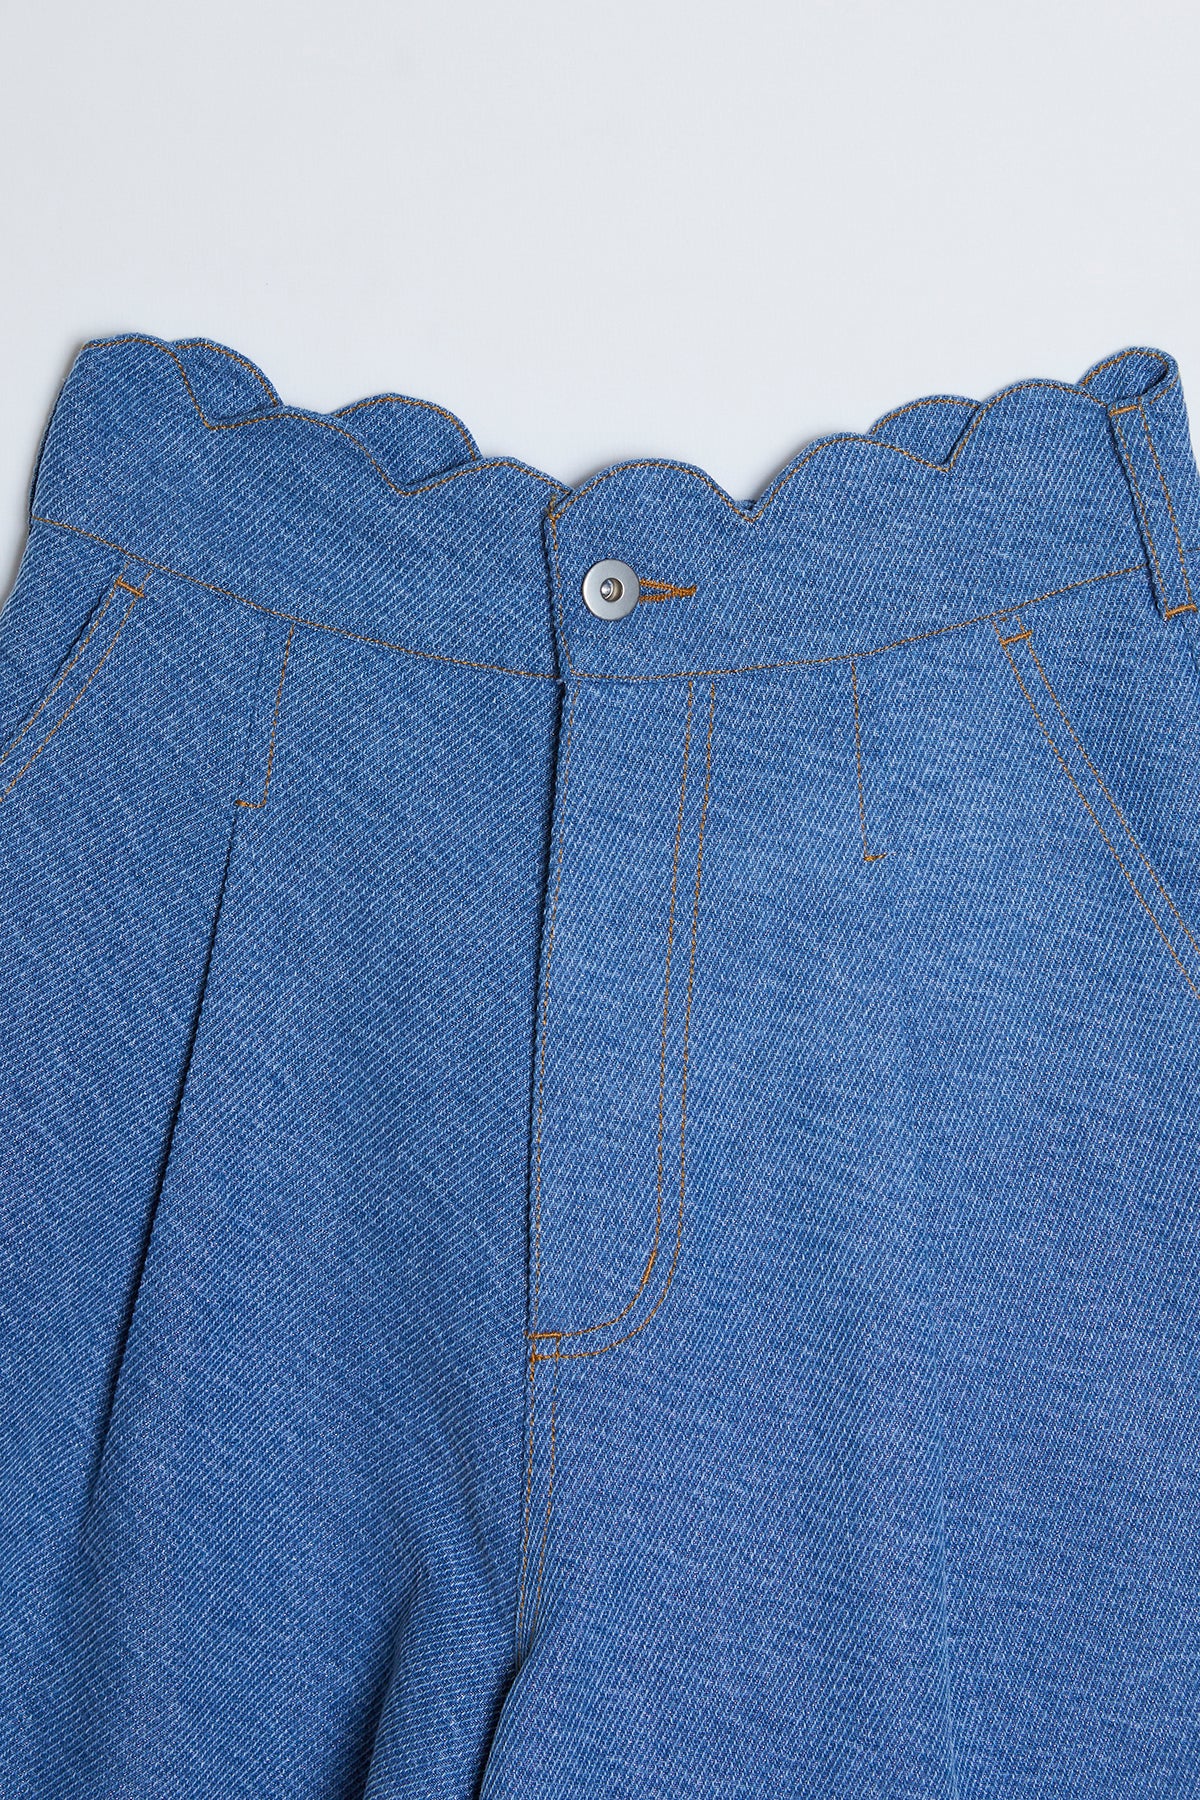 Glare Denim Short Pants / Blue